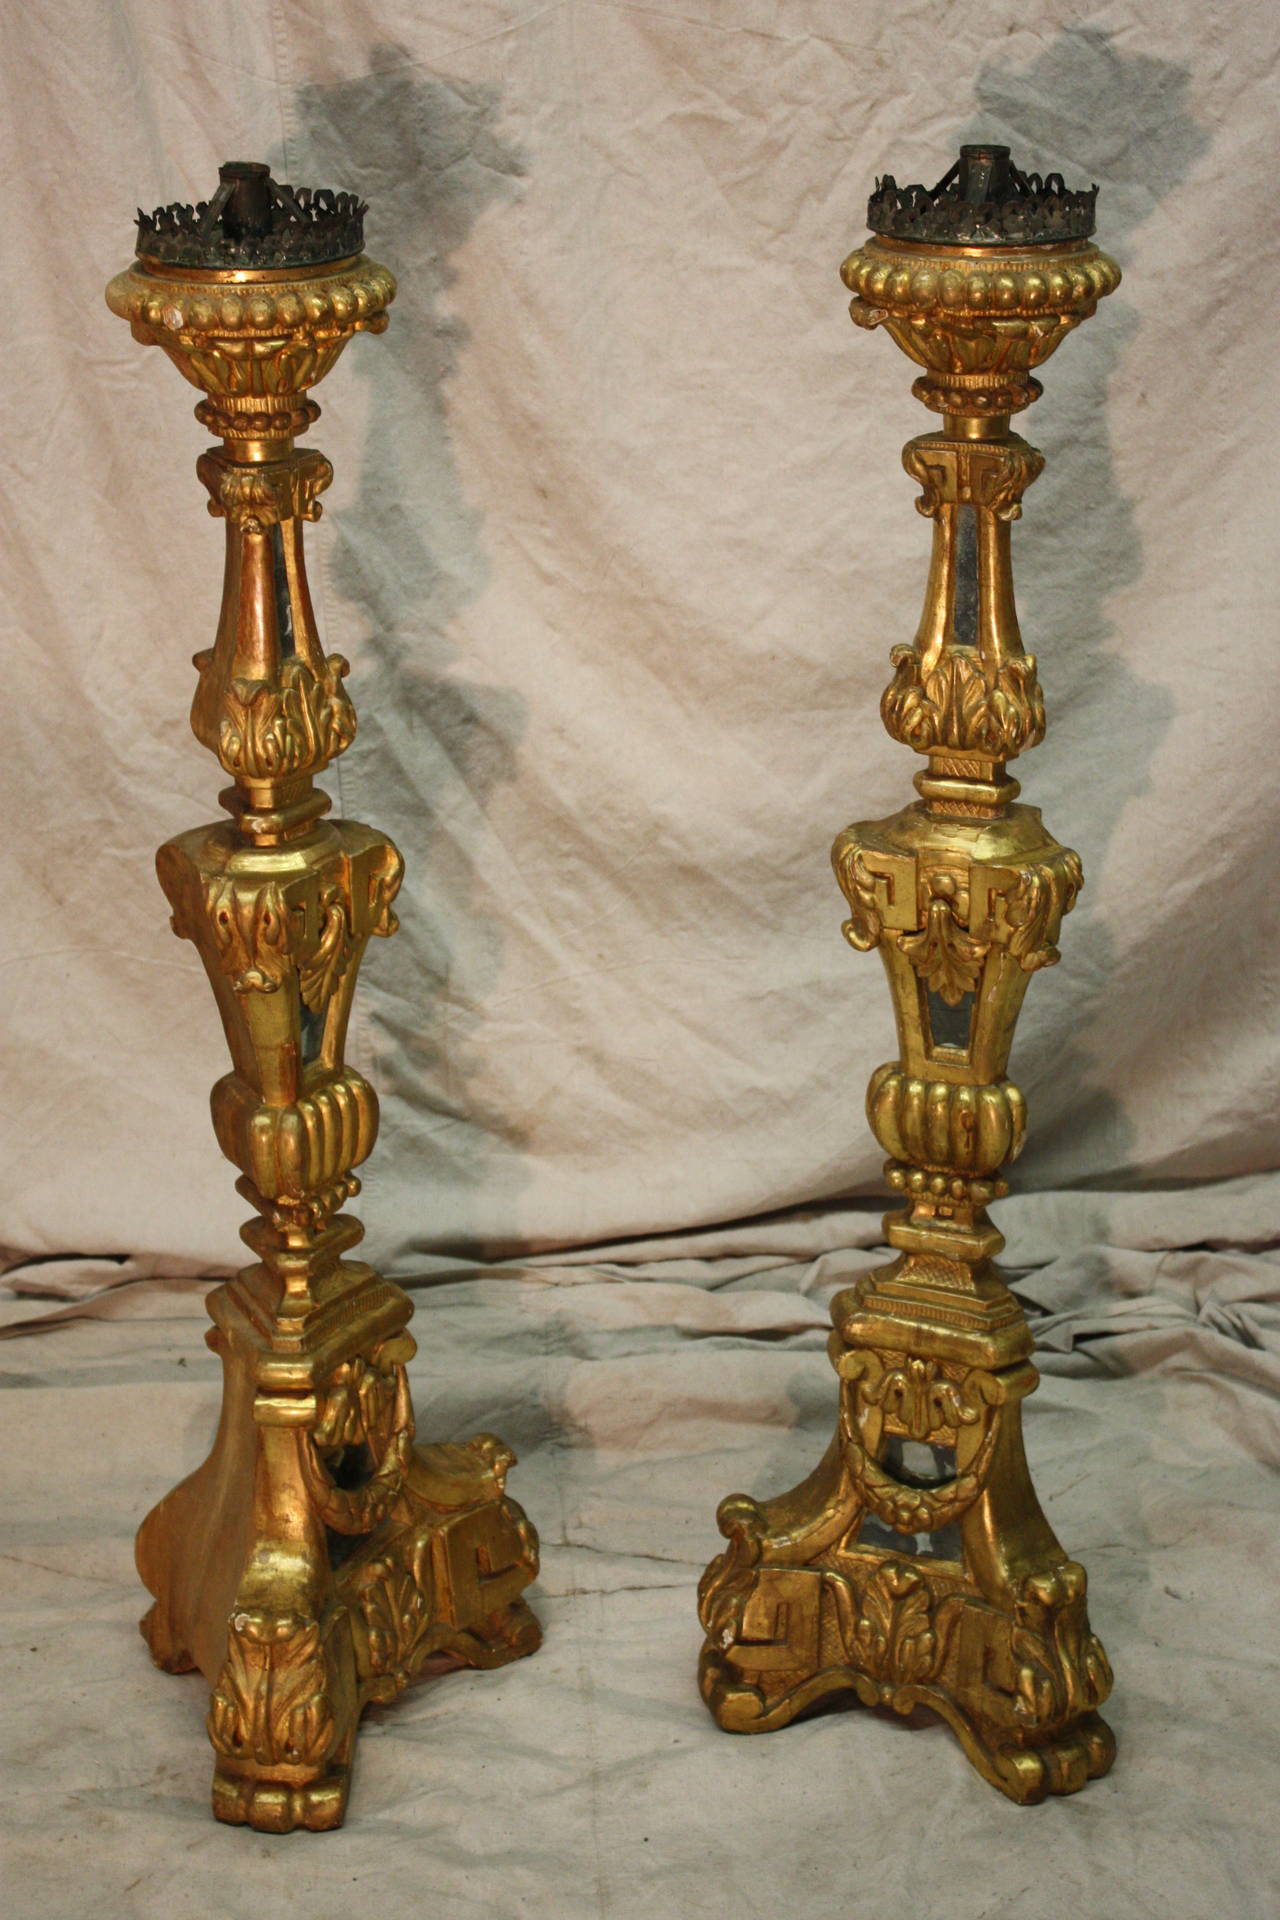 Italienische Kerzenständer aus Giltwood, 18. Jahrhundert. Die Kerzenständer sind aus vergoldeten Blättern und alten Spiegeln wiederhergestellt.